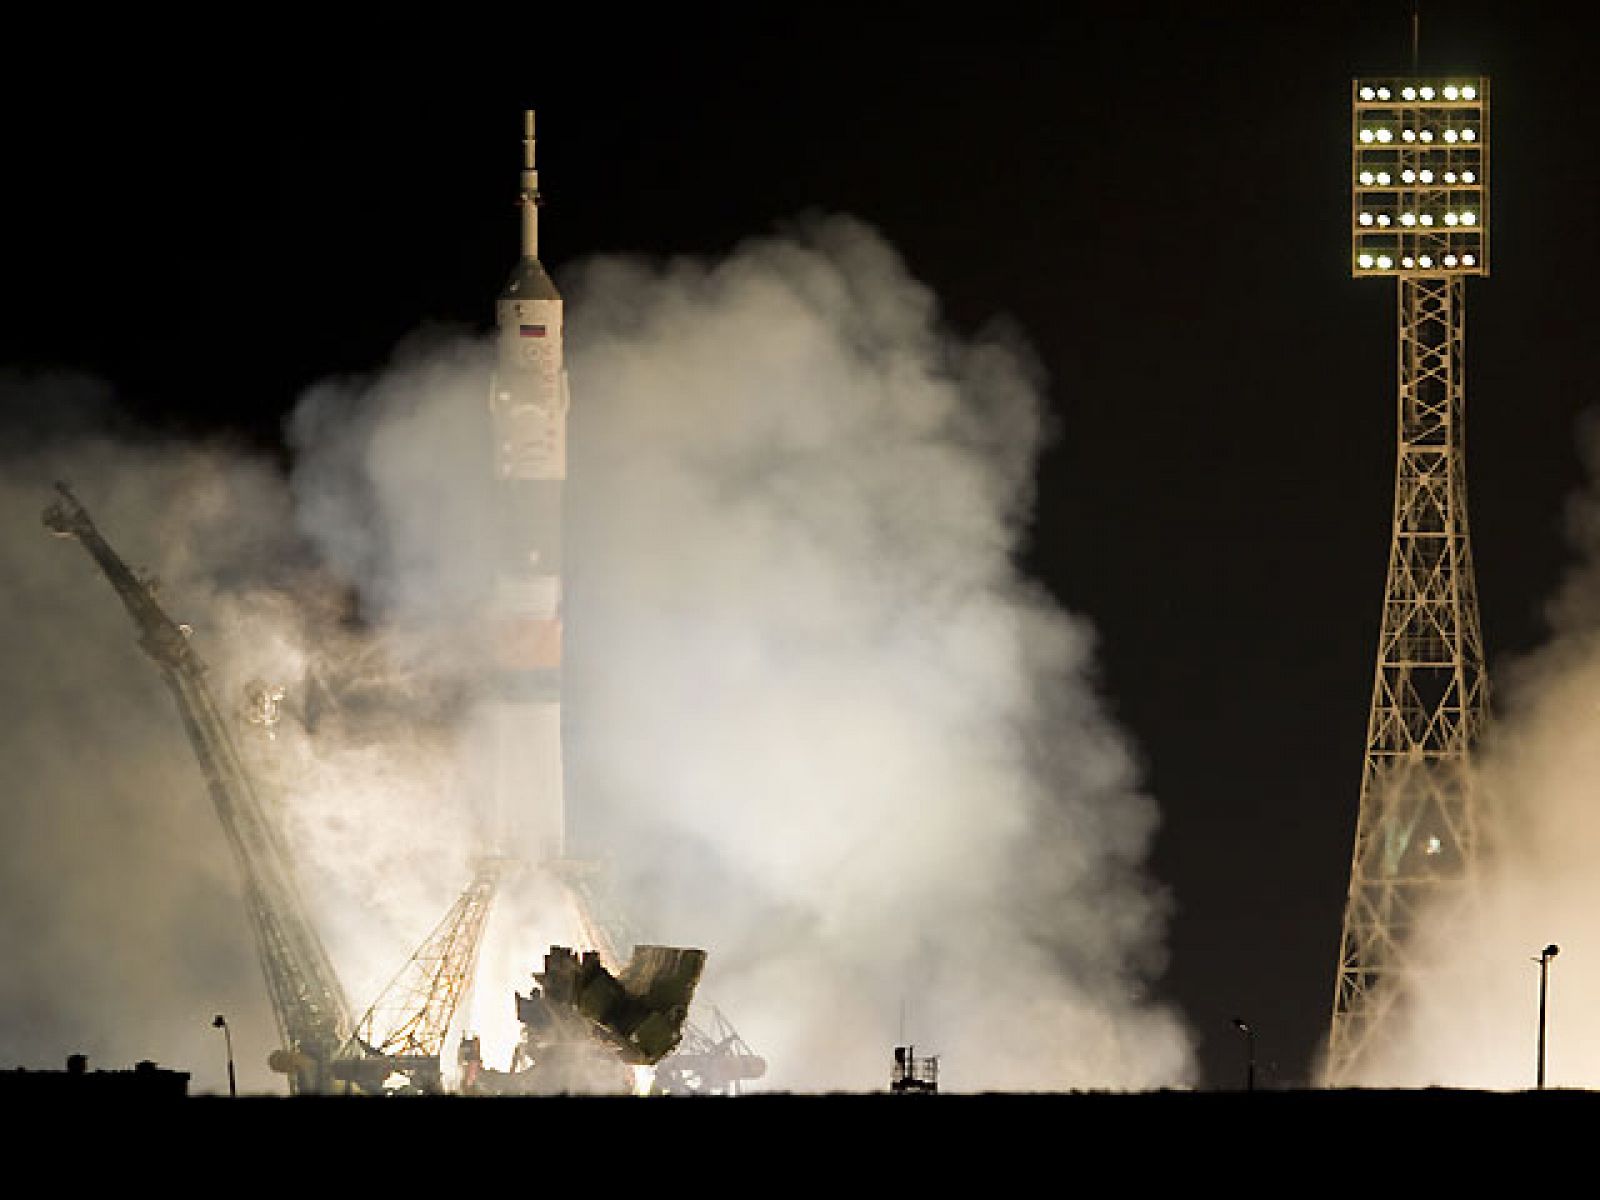 La nave rusa Soyuz TMA-03M con tres tripulantes a bordo, un ruso, un holandés y un estadounidense, despegó hoy rumbo a la Estación Espacial Internacional. El lanzamiento de la nave se produjo las 13.13 GMT desde el cosmódromo kazajo de Baikonur, en